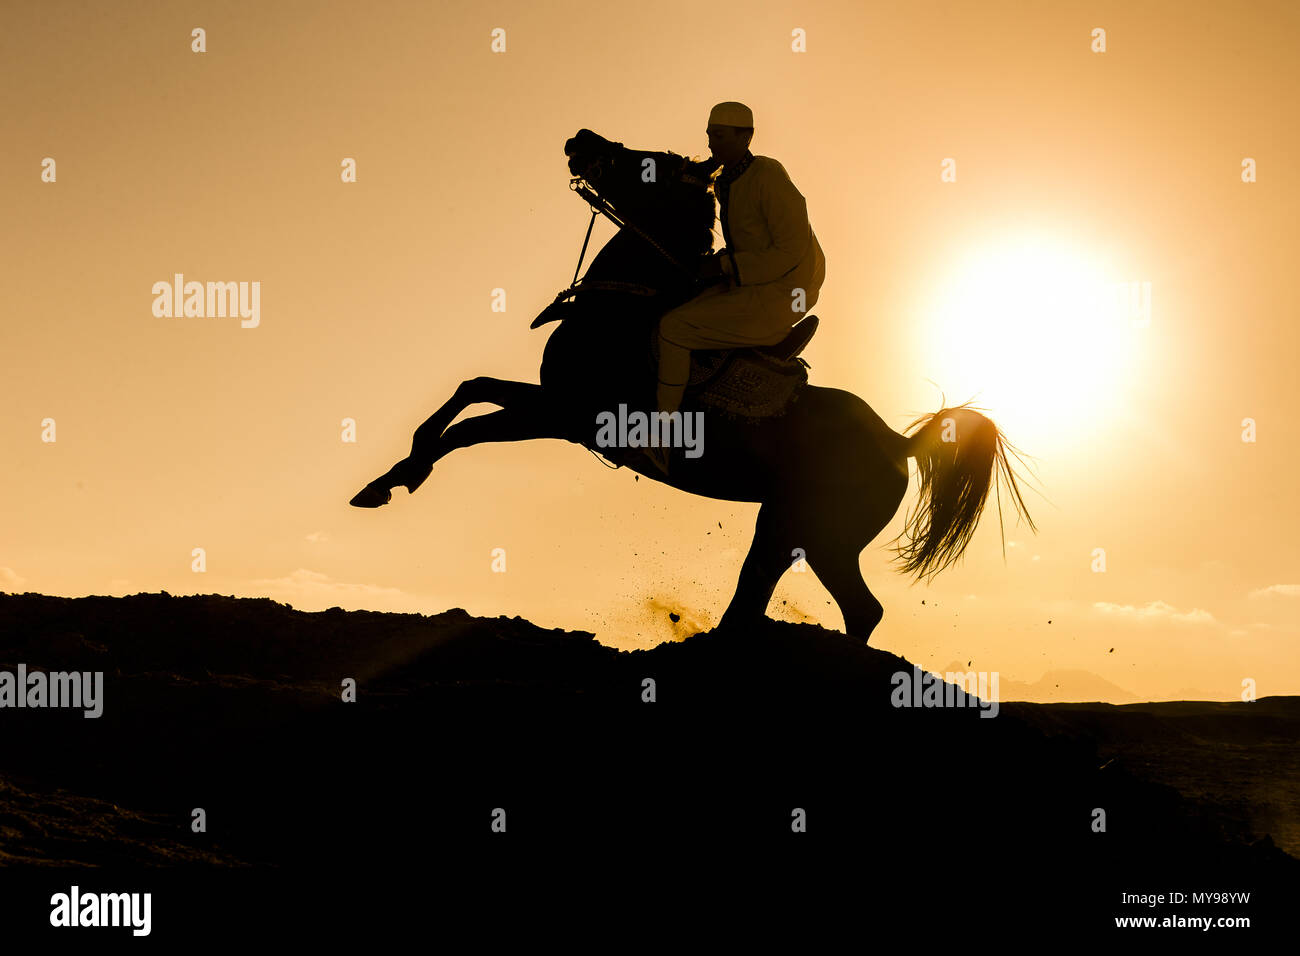 Arabian Horse. Pilota sul stallone nero al galoppo nel deserto, stagliano contro il sole di setting. Egitto Foto Stock